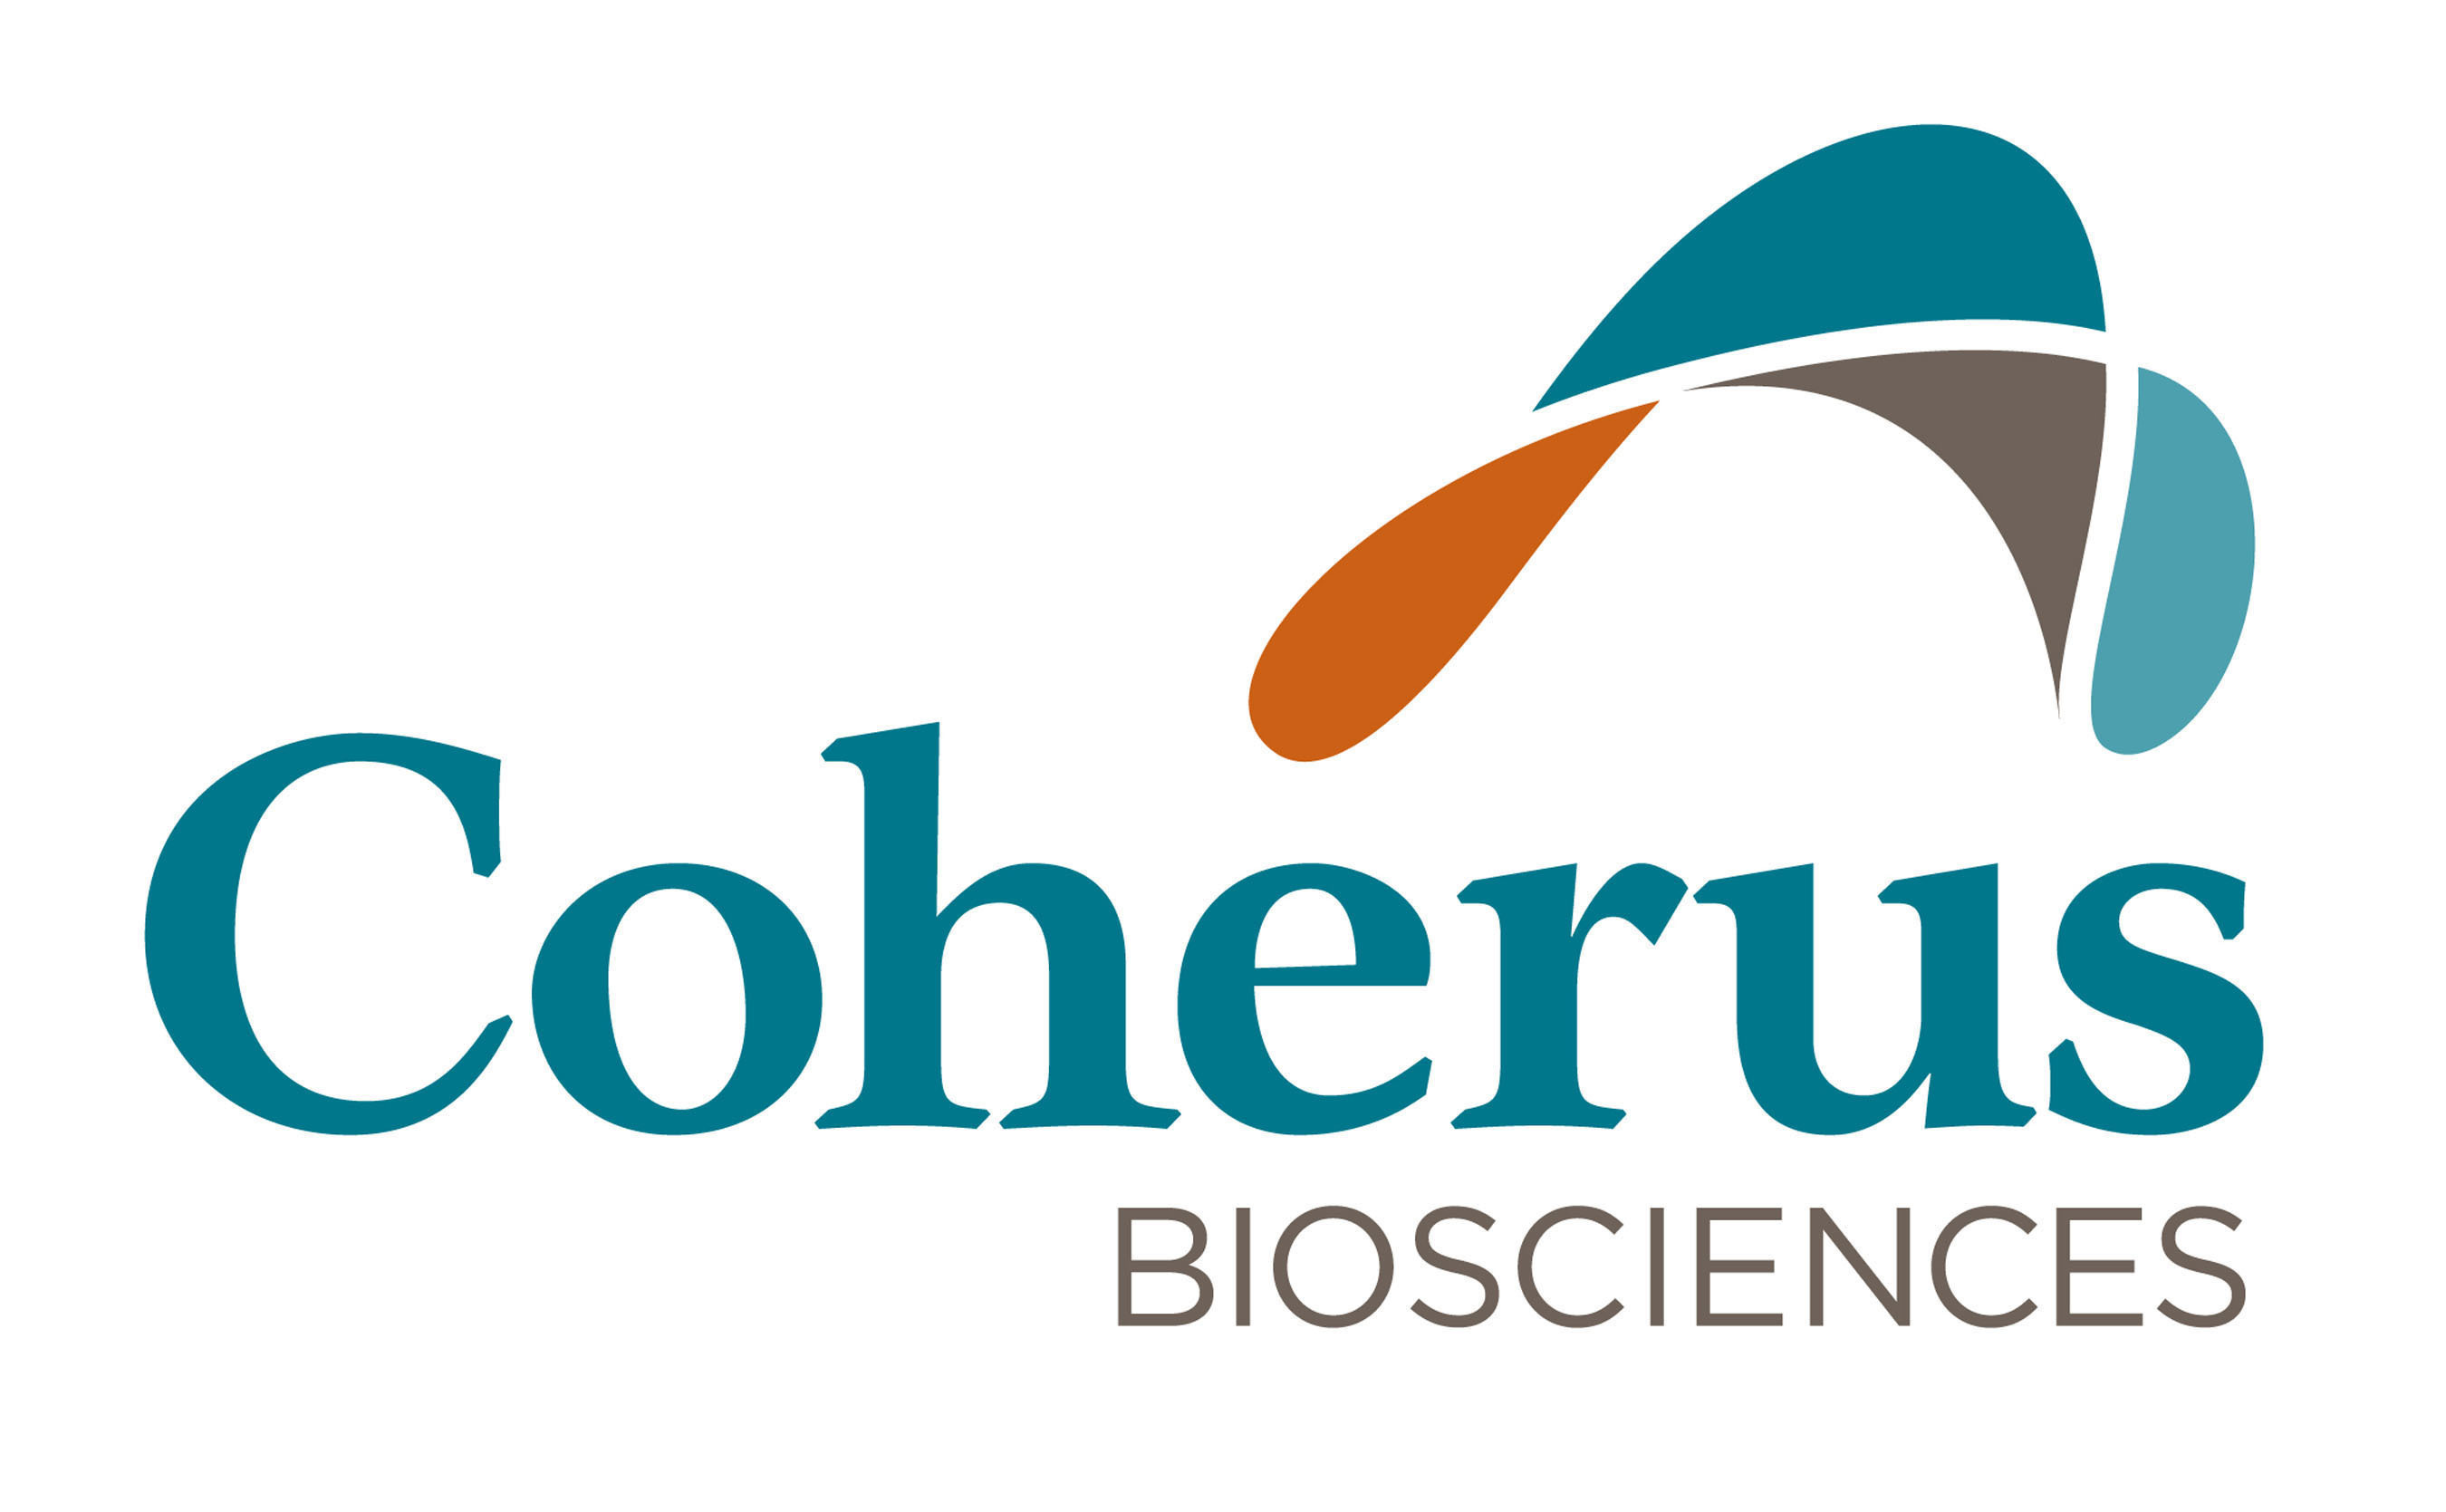 Coherus BioSciences Logo. (PRNewsFoto/Coherus BioSciences) (PRNewsFoto/)